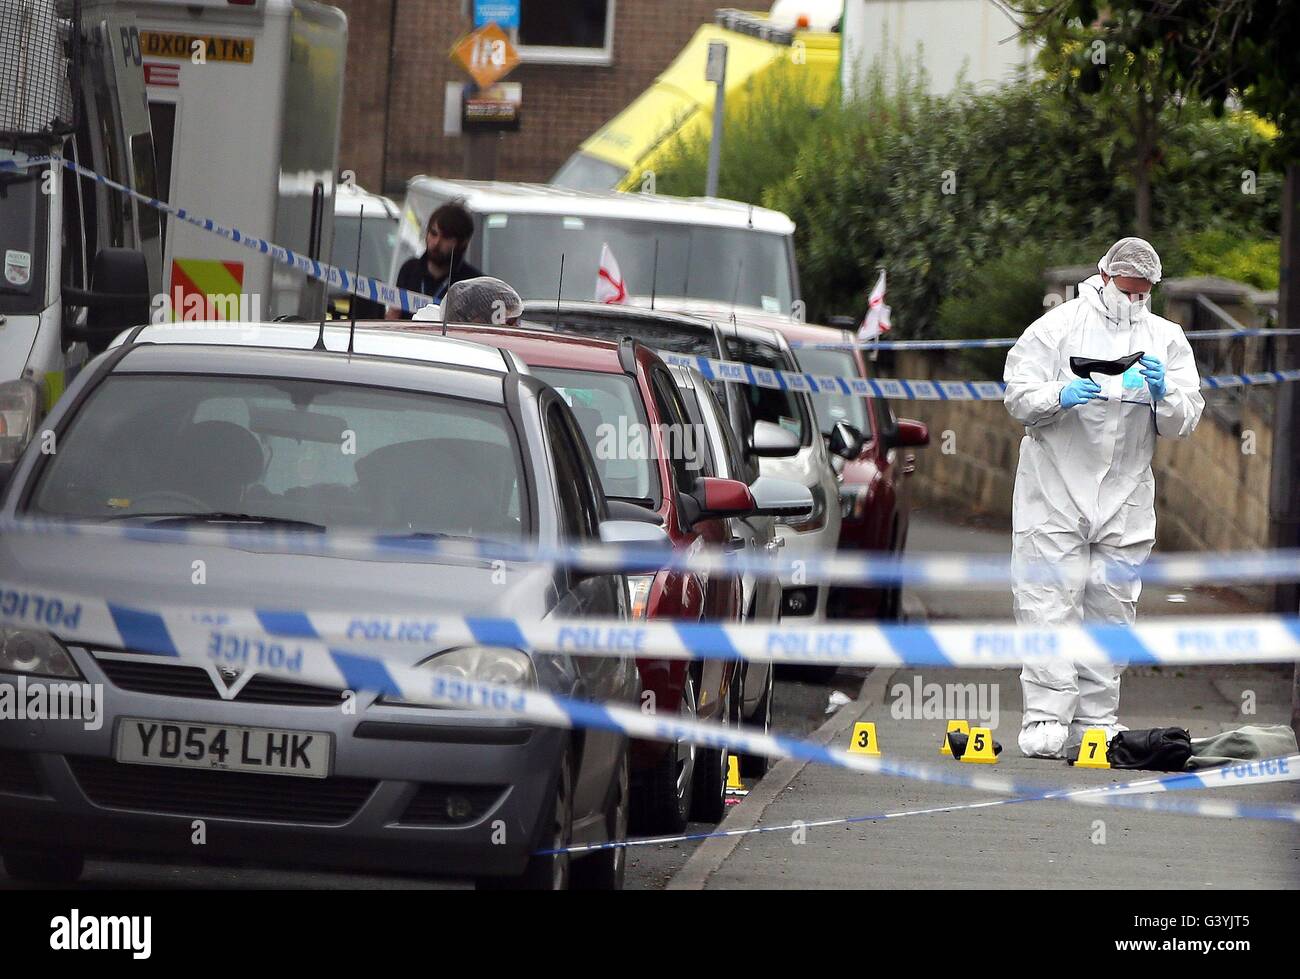 Un agent de police scientifique regarde une femme de service sur les lieux en Birstall, West Yorkshire, après la mort du travail MP Jo Cox, qui est mort après avoir été abattu et poignardé dans la rue à l'extérieur de sa circonscription conseils la chirurgie. Banque D'Images